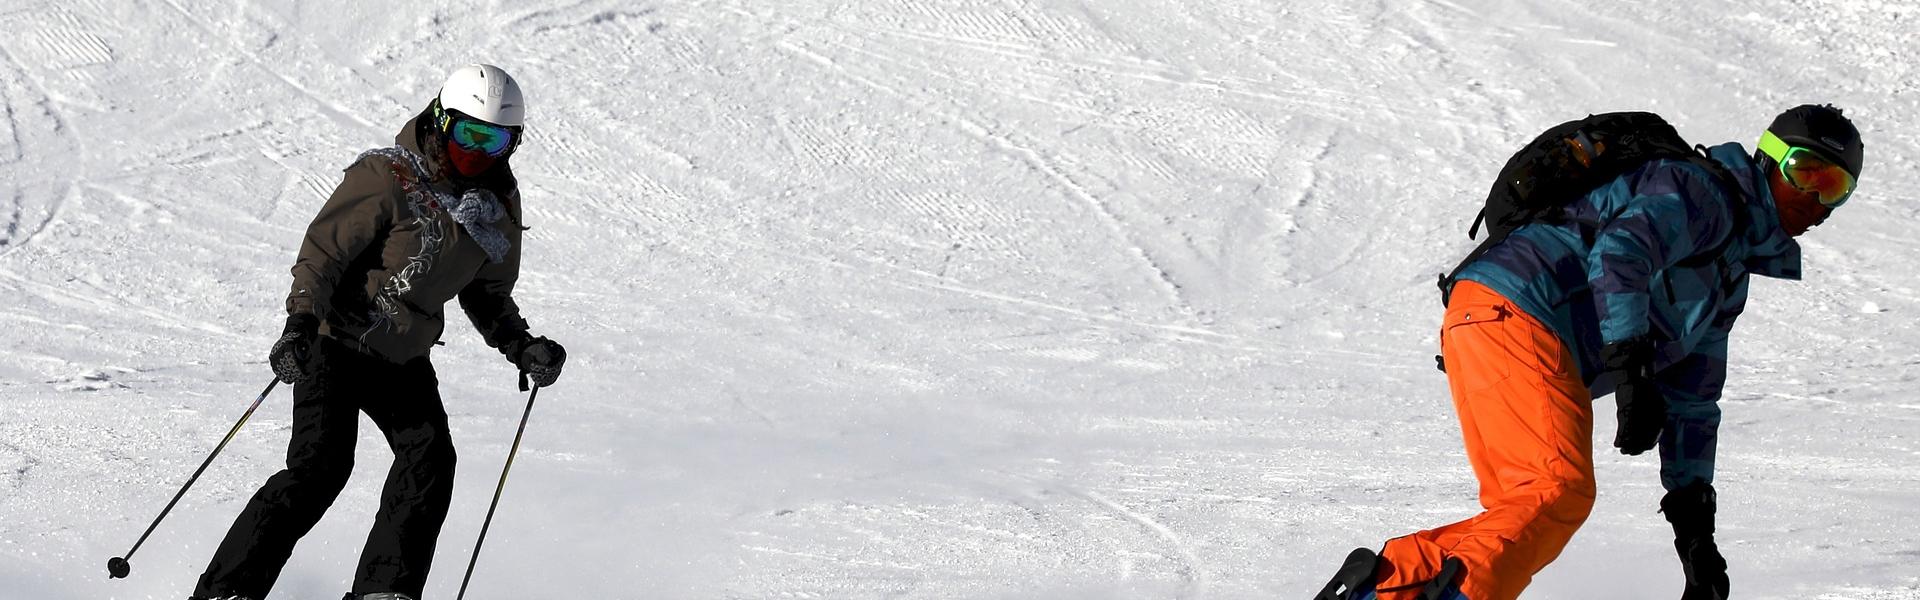 Narciarz i snowboardzista na stoku